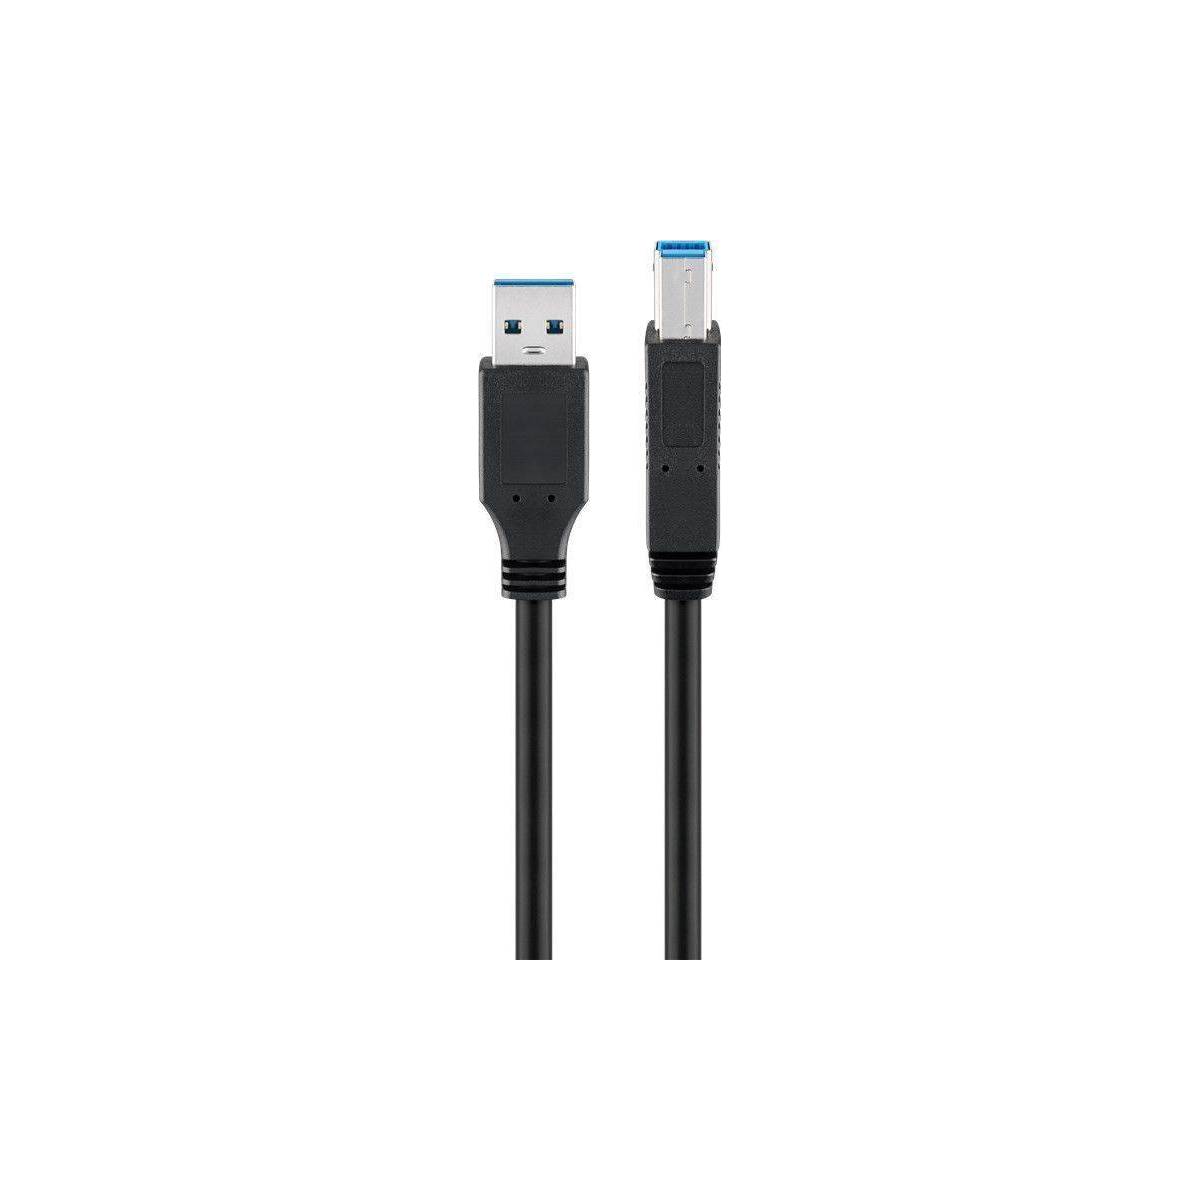 Tolkning Elendighed uddøde USB 3.0 kabel USB A til B 1,8m - 300 dages returret